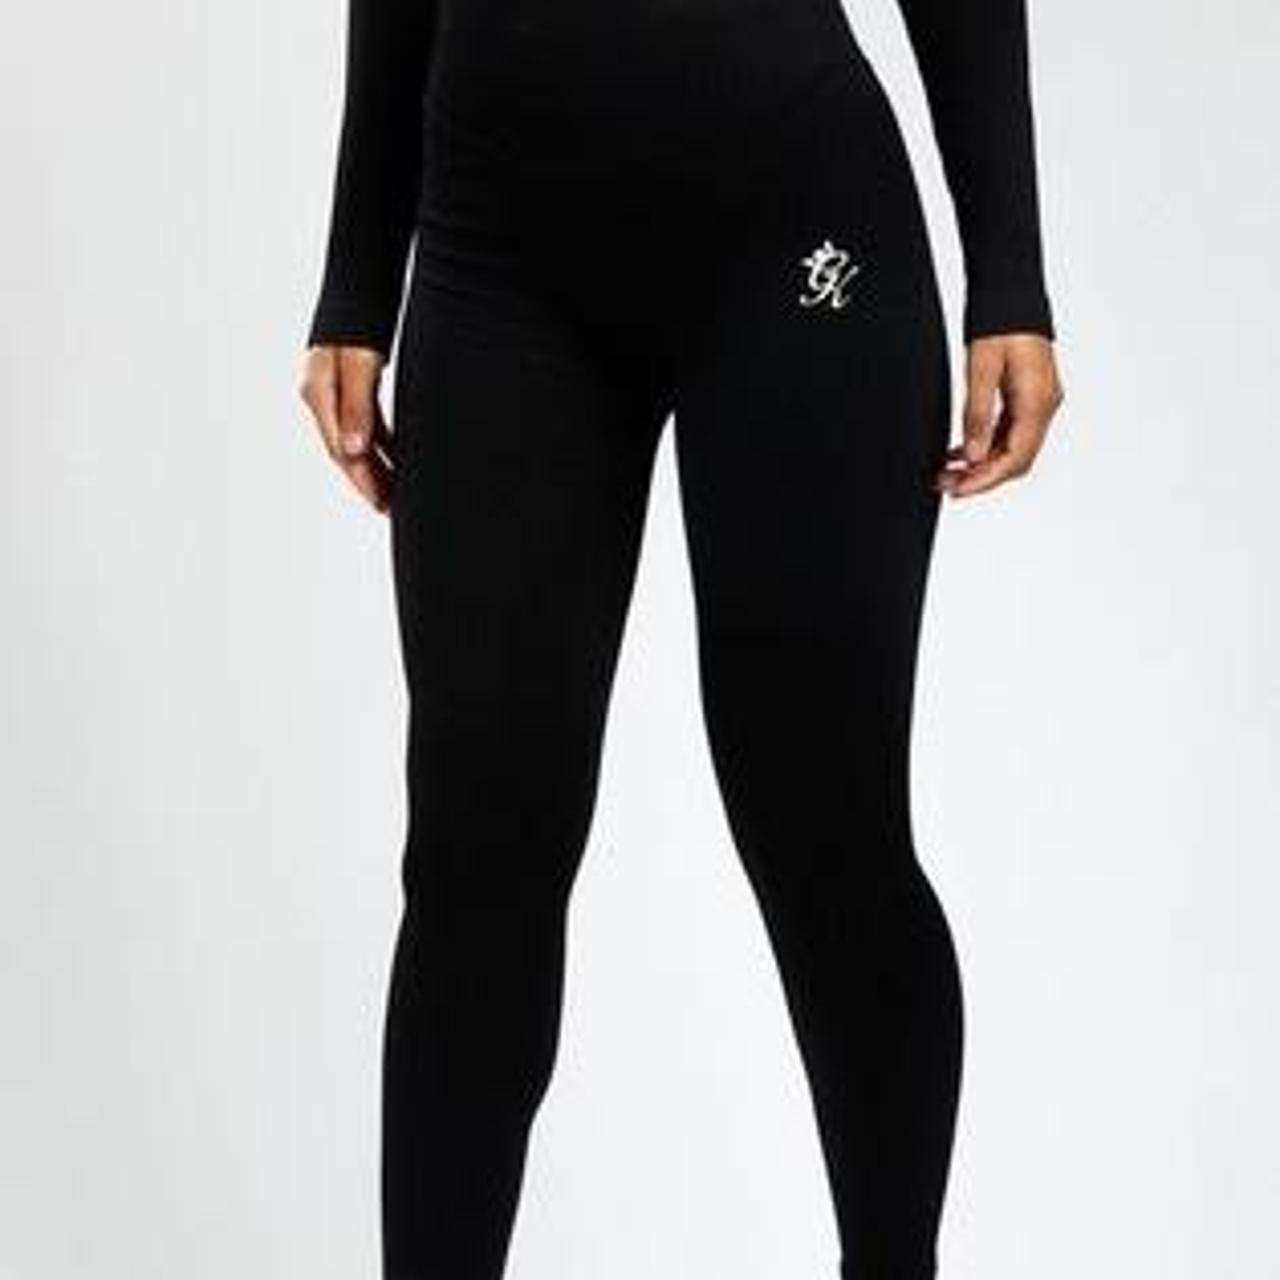 Product Image 3 - GymKing Ribbed Black leggings (Size